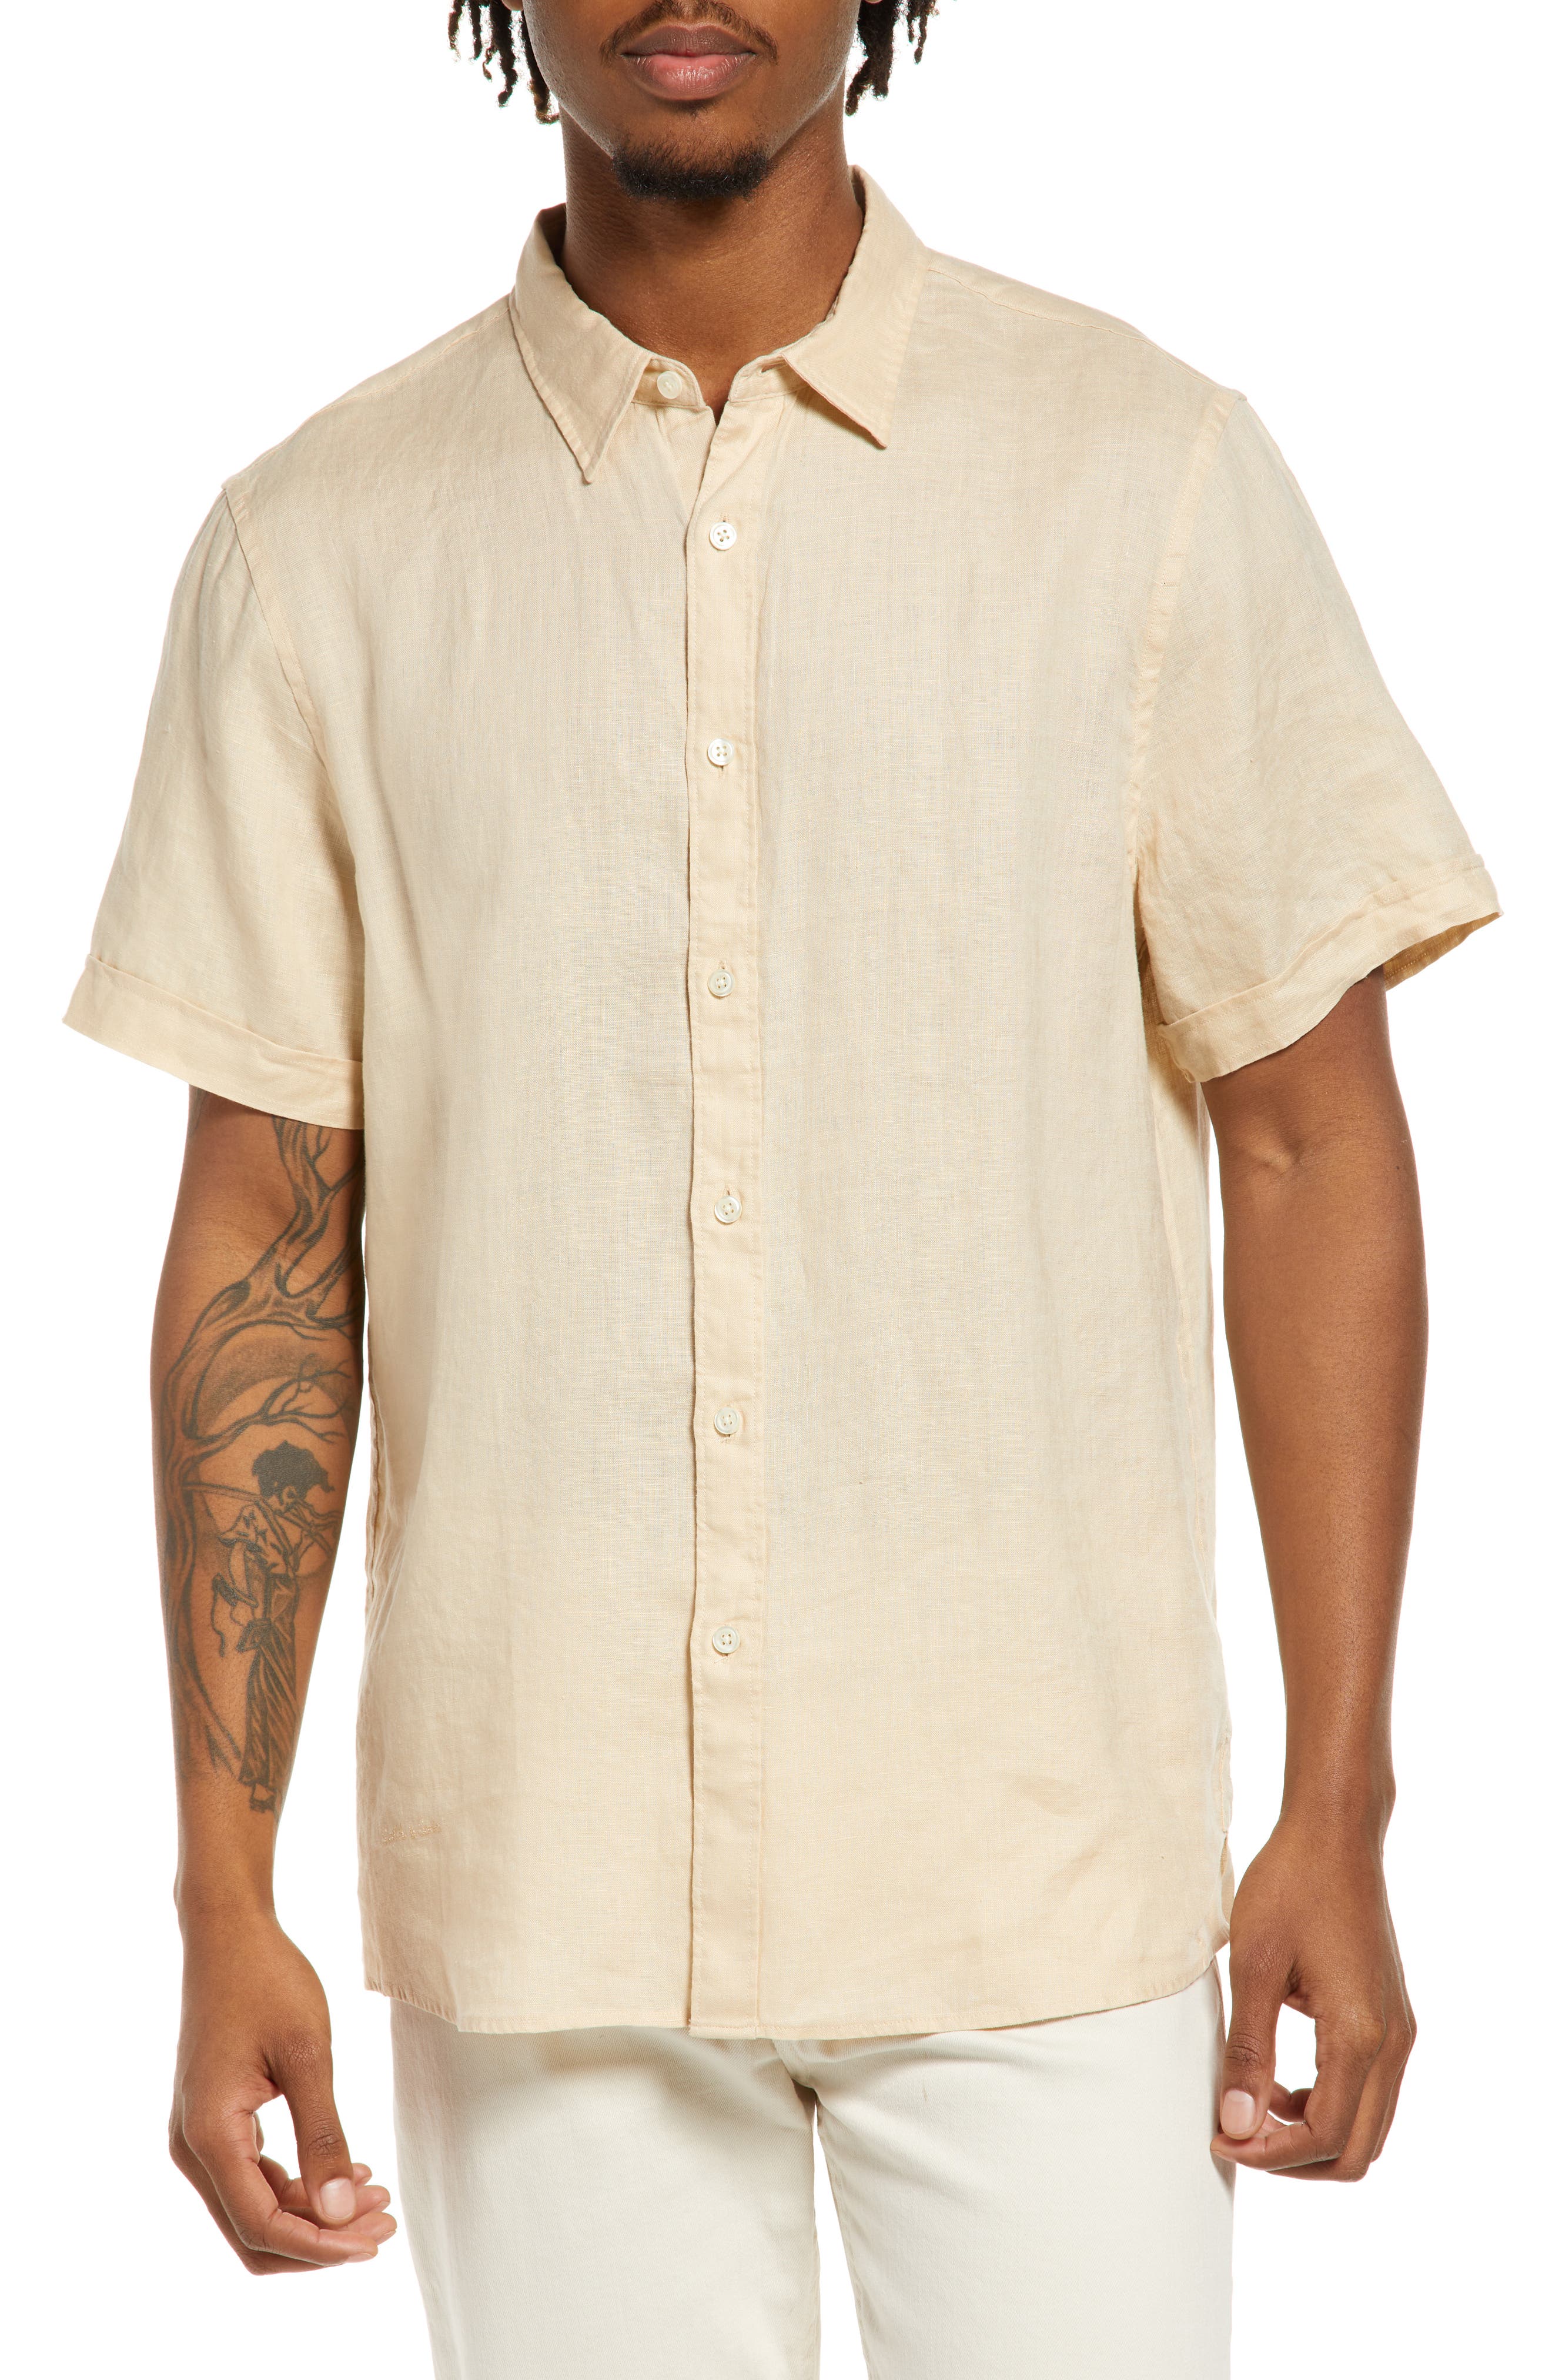 HERW Mens Linen Shirt Summer Casual Short Sleeve Shirt